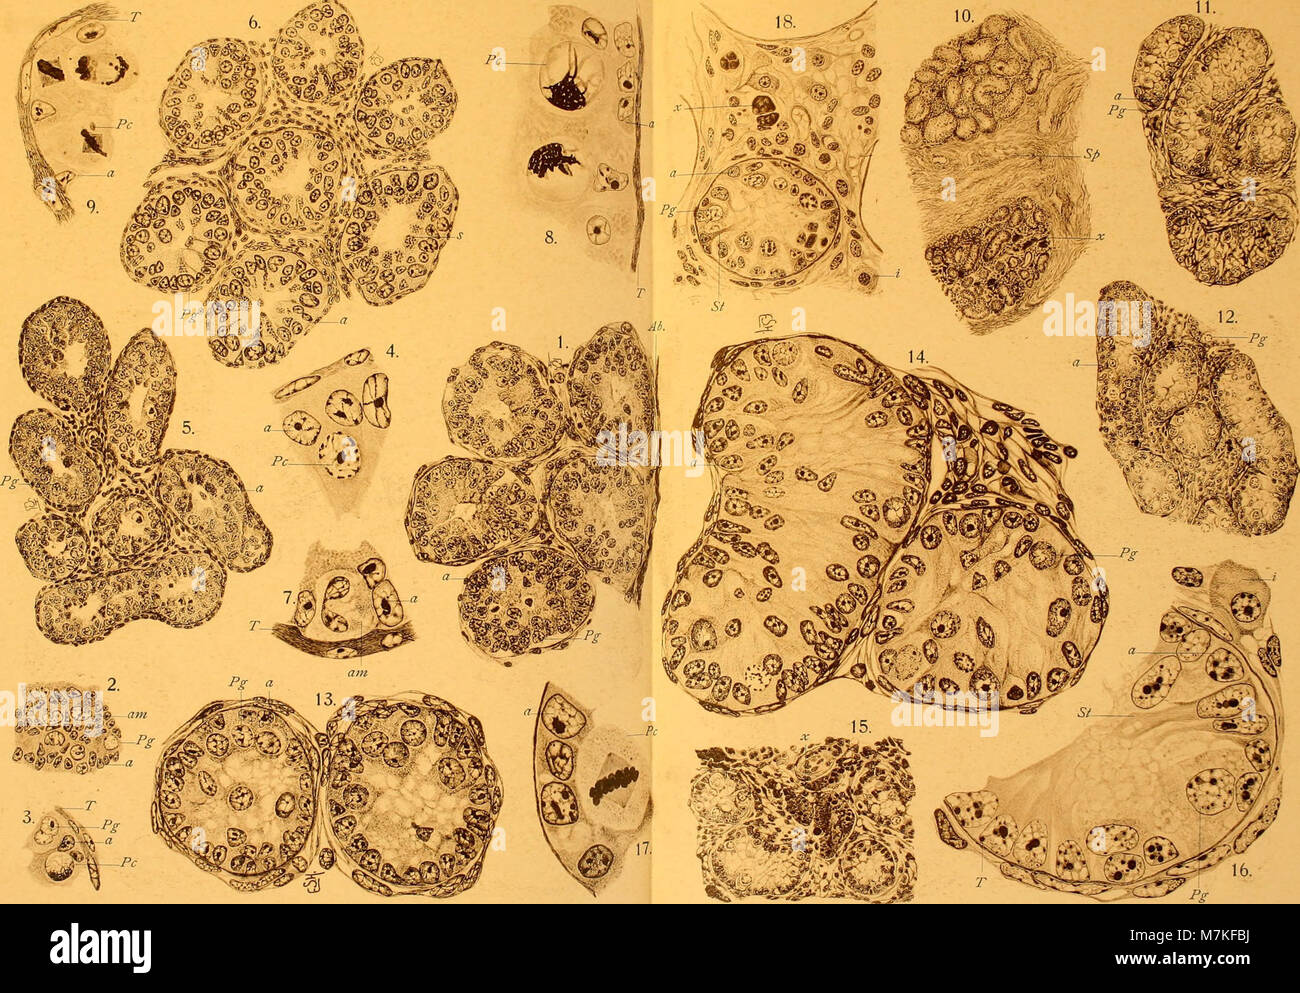 Archiv für mikroskopische Anatomie (1911) (20335905341) Stockfoto